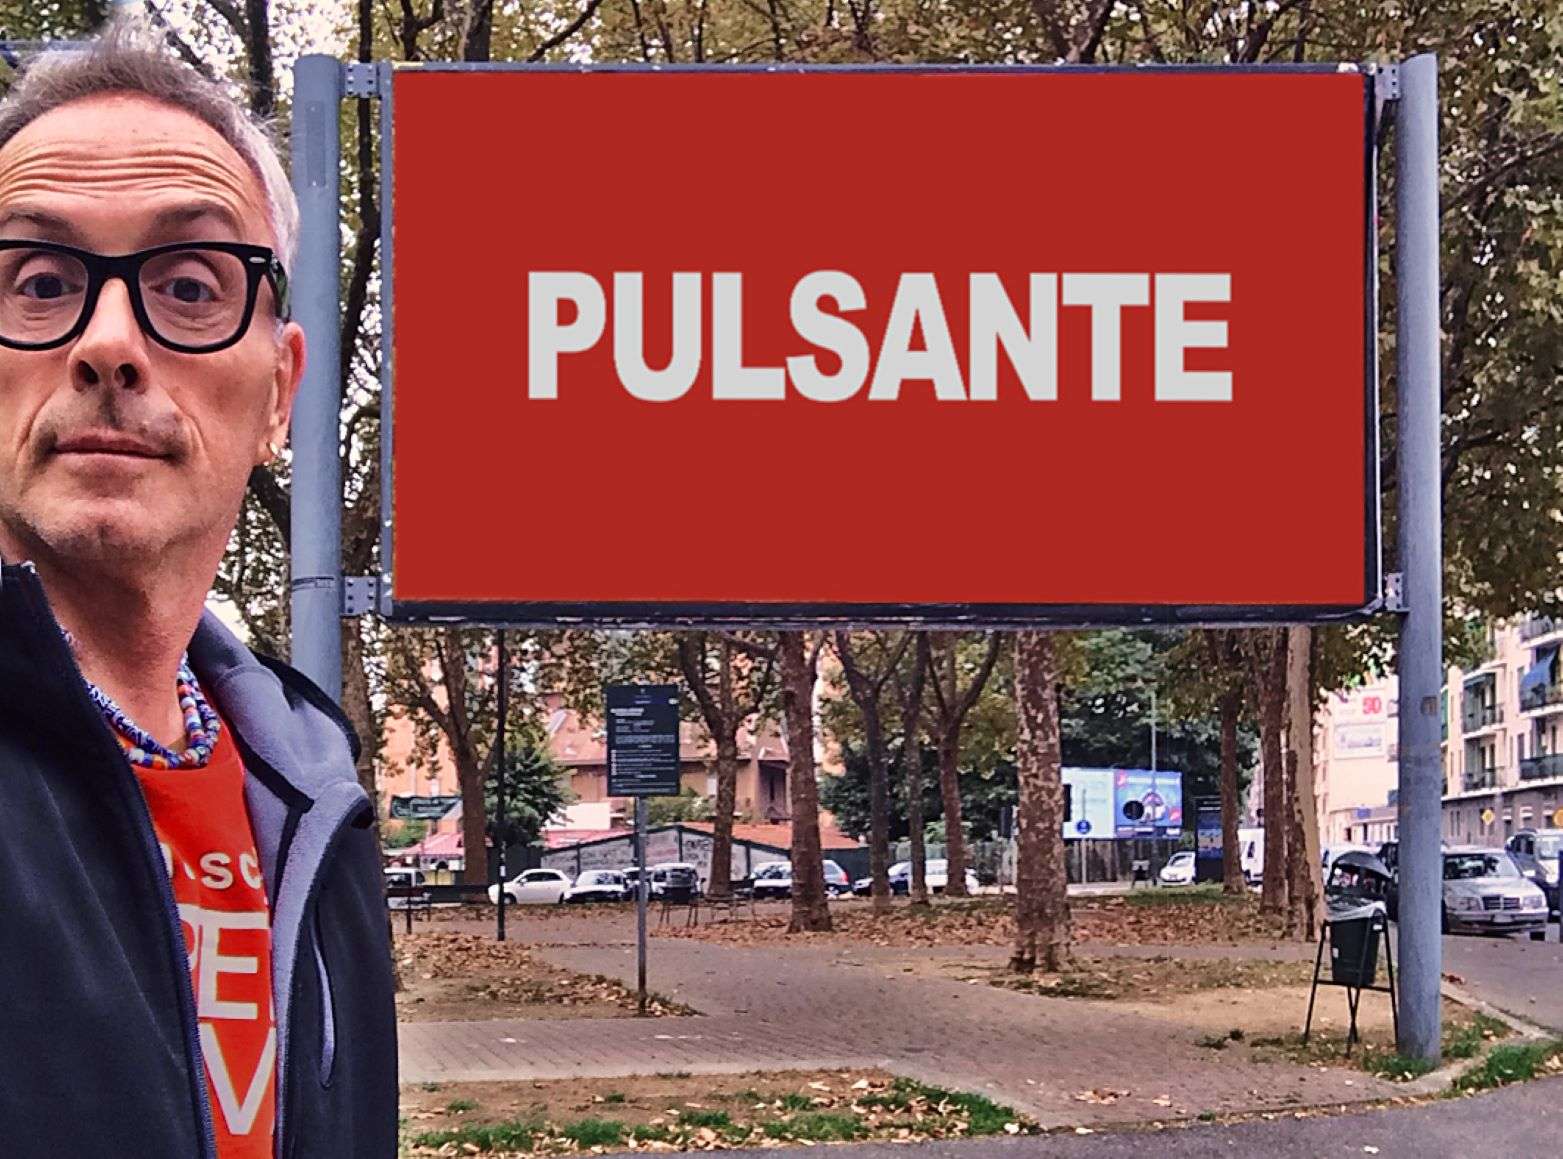 A Barriera di Milano martedì 25 ottobre inaugura “Pulsante”, l'Opera Viva di Alessandro Bulgini